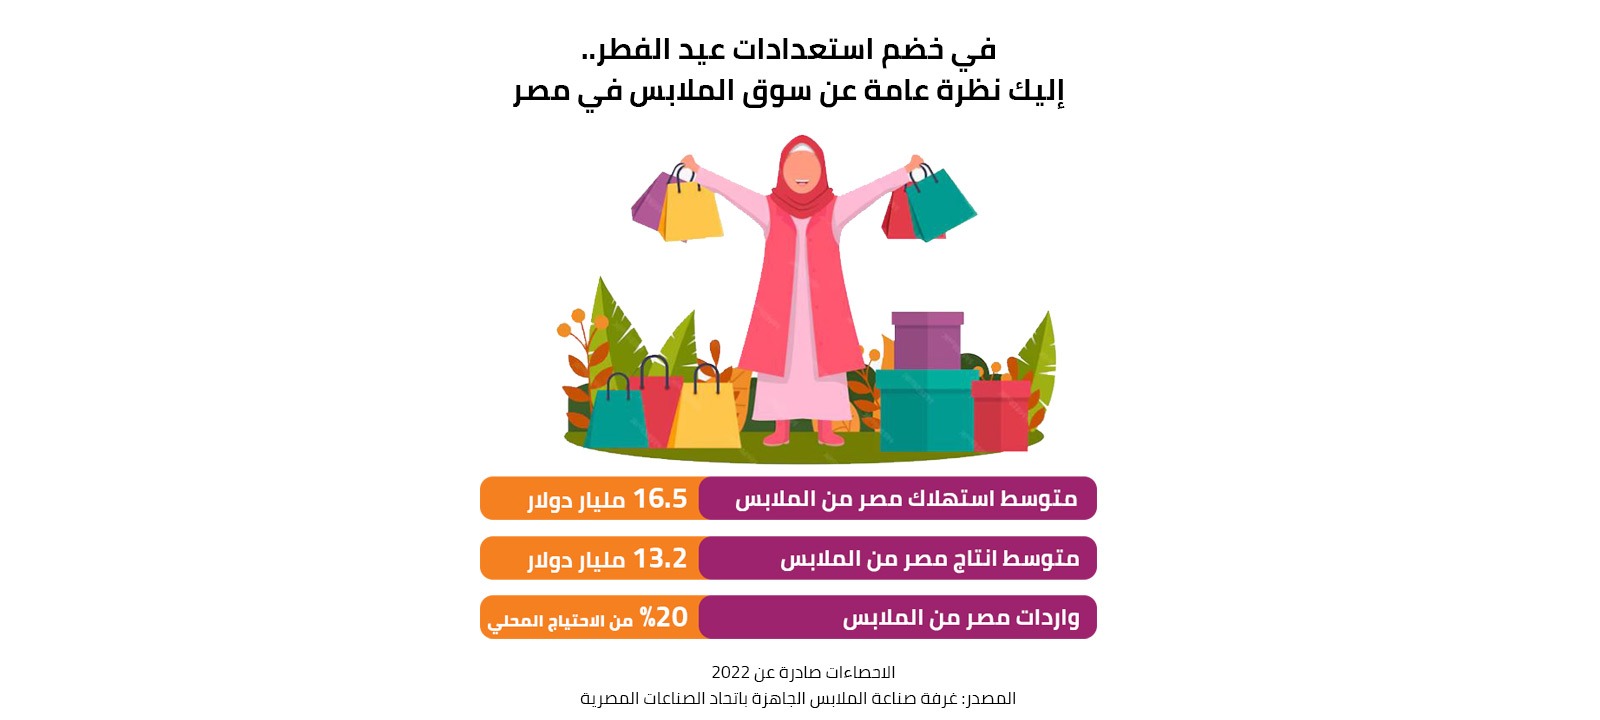 في خضم استعدادات عيد الفطر ... إليك نظرة عامة عن سوق الملابس في مصر